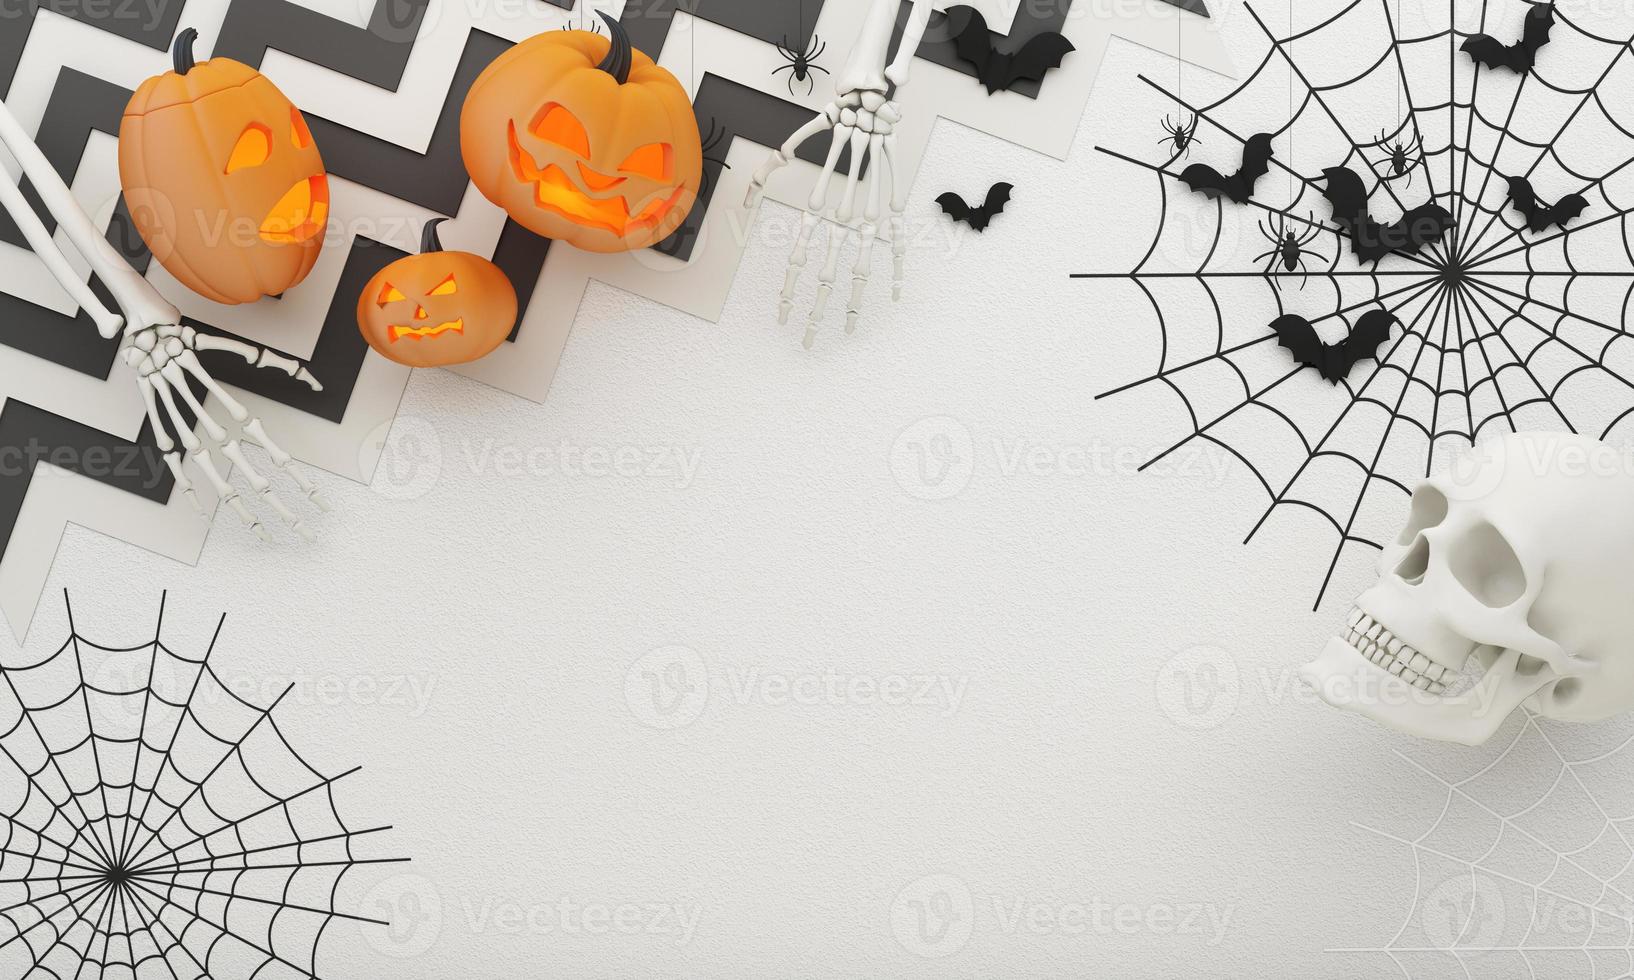 cartazes de festa de halloween feliz com morcego de teia de aranha com abóboras na ilustração dos desenhos animados. lua cheia e fantasma de vaia com mão humana e esqueleto de cabeça. fundo de vista superior de textura de concreto. renderização em 3D foto